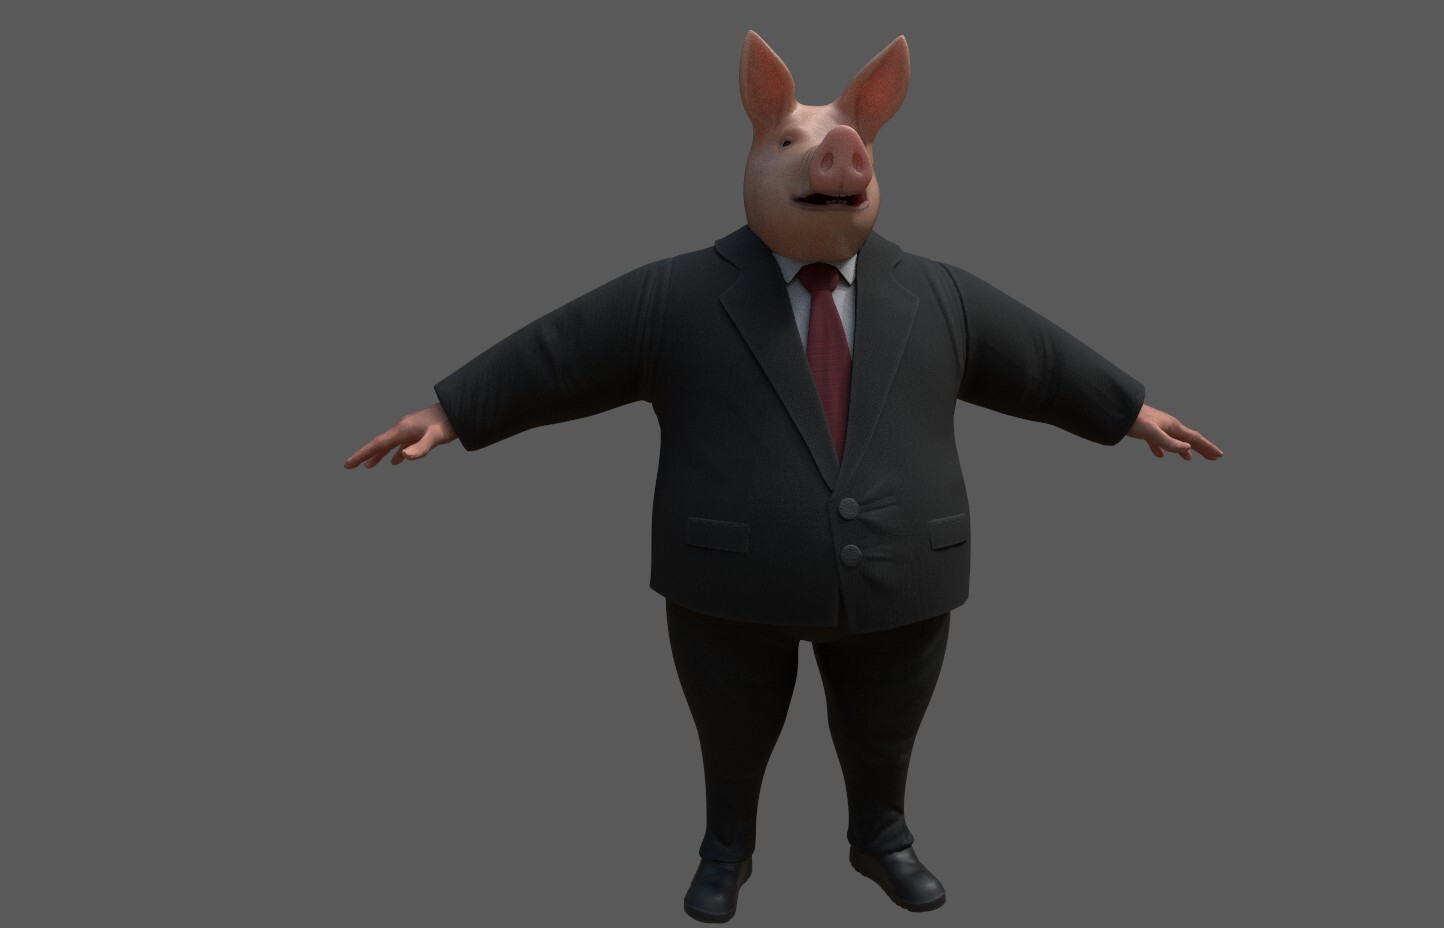 Pig boss